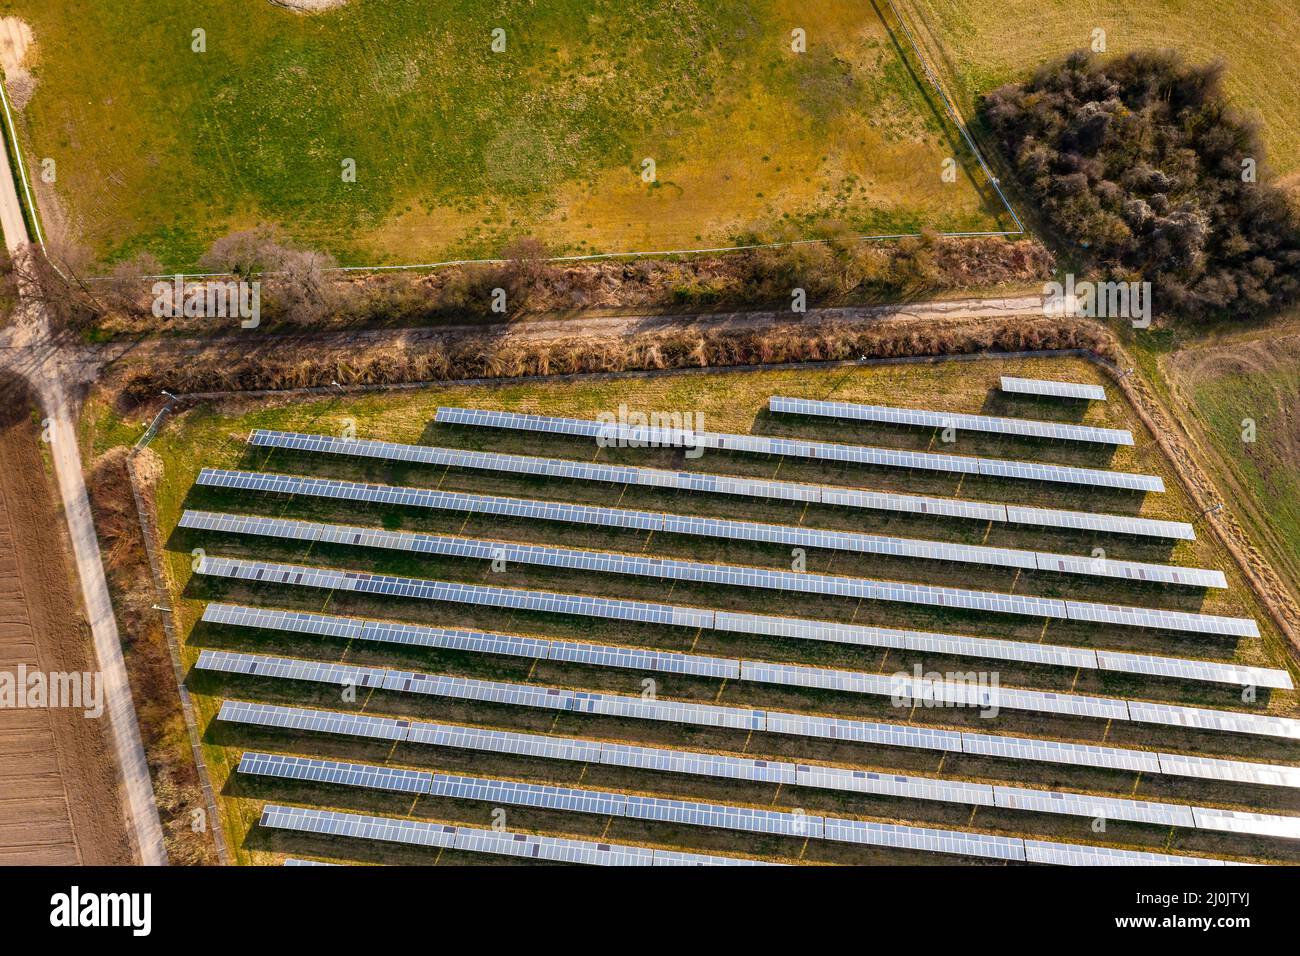 Un sistema solar fotovoltaico montado en tierra con paneles solares, arbustos, pistas agrícolas y prados en Alemania desde una vista de drone Foto de stock